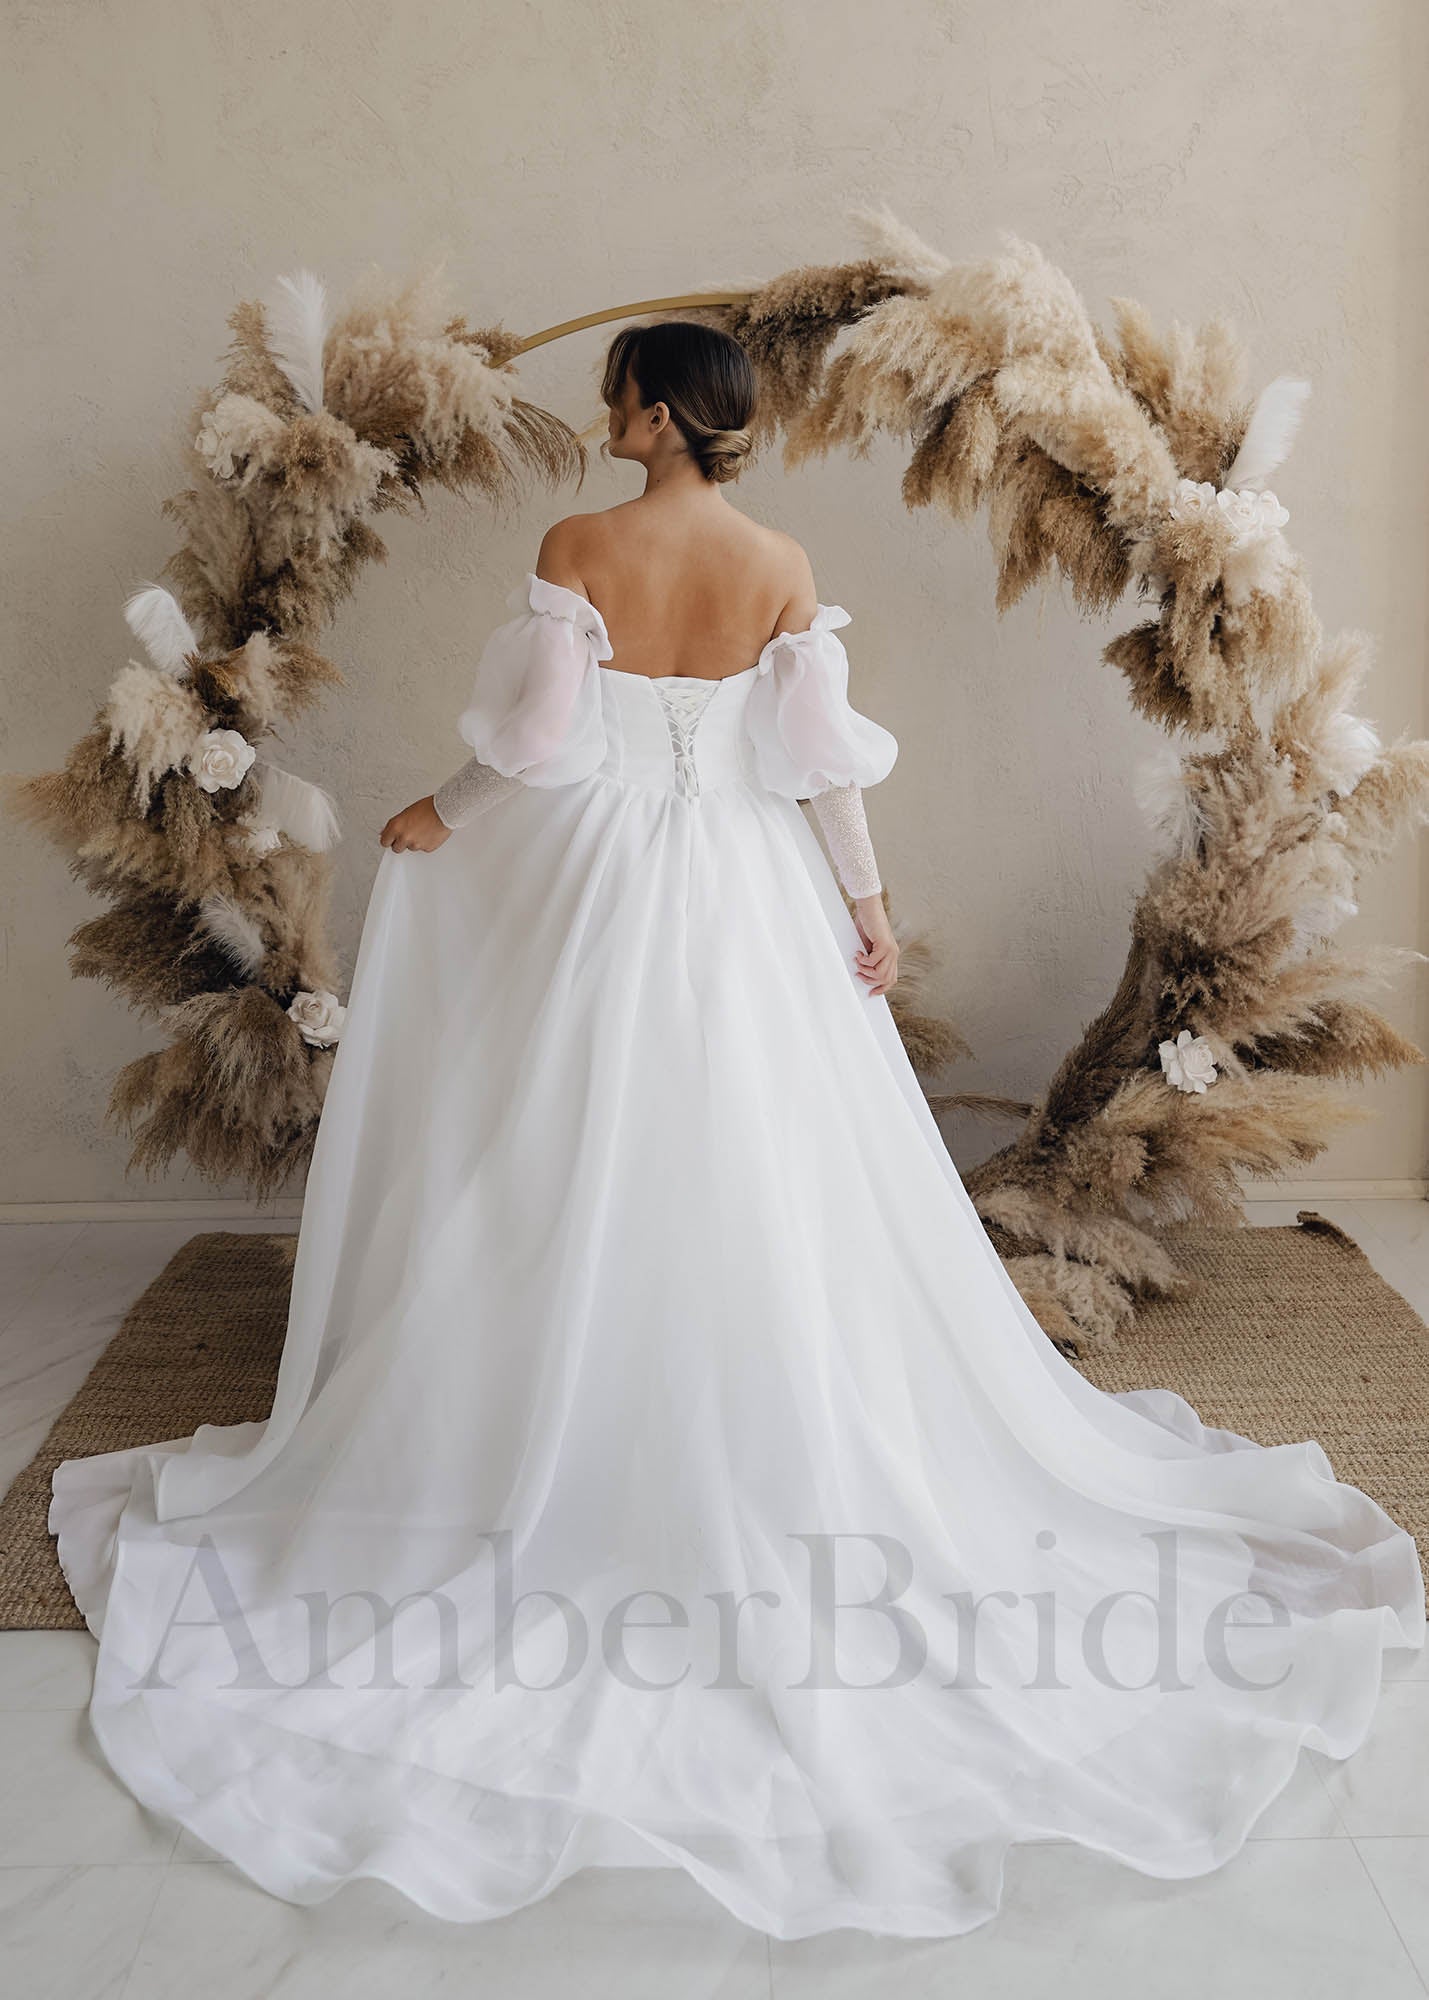 Romantic Corset Wedding Dress, Sweat Heart Neckline, Long Bishop